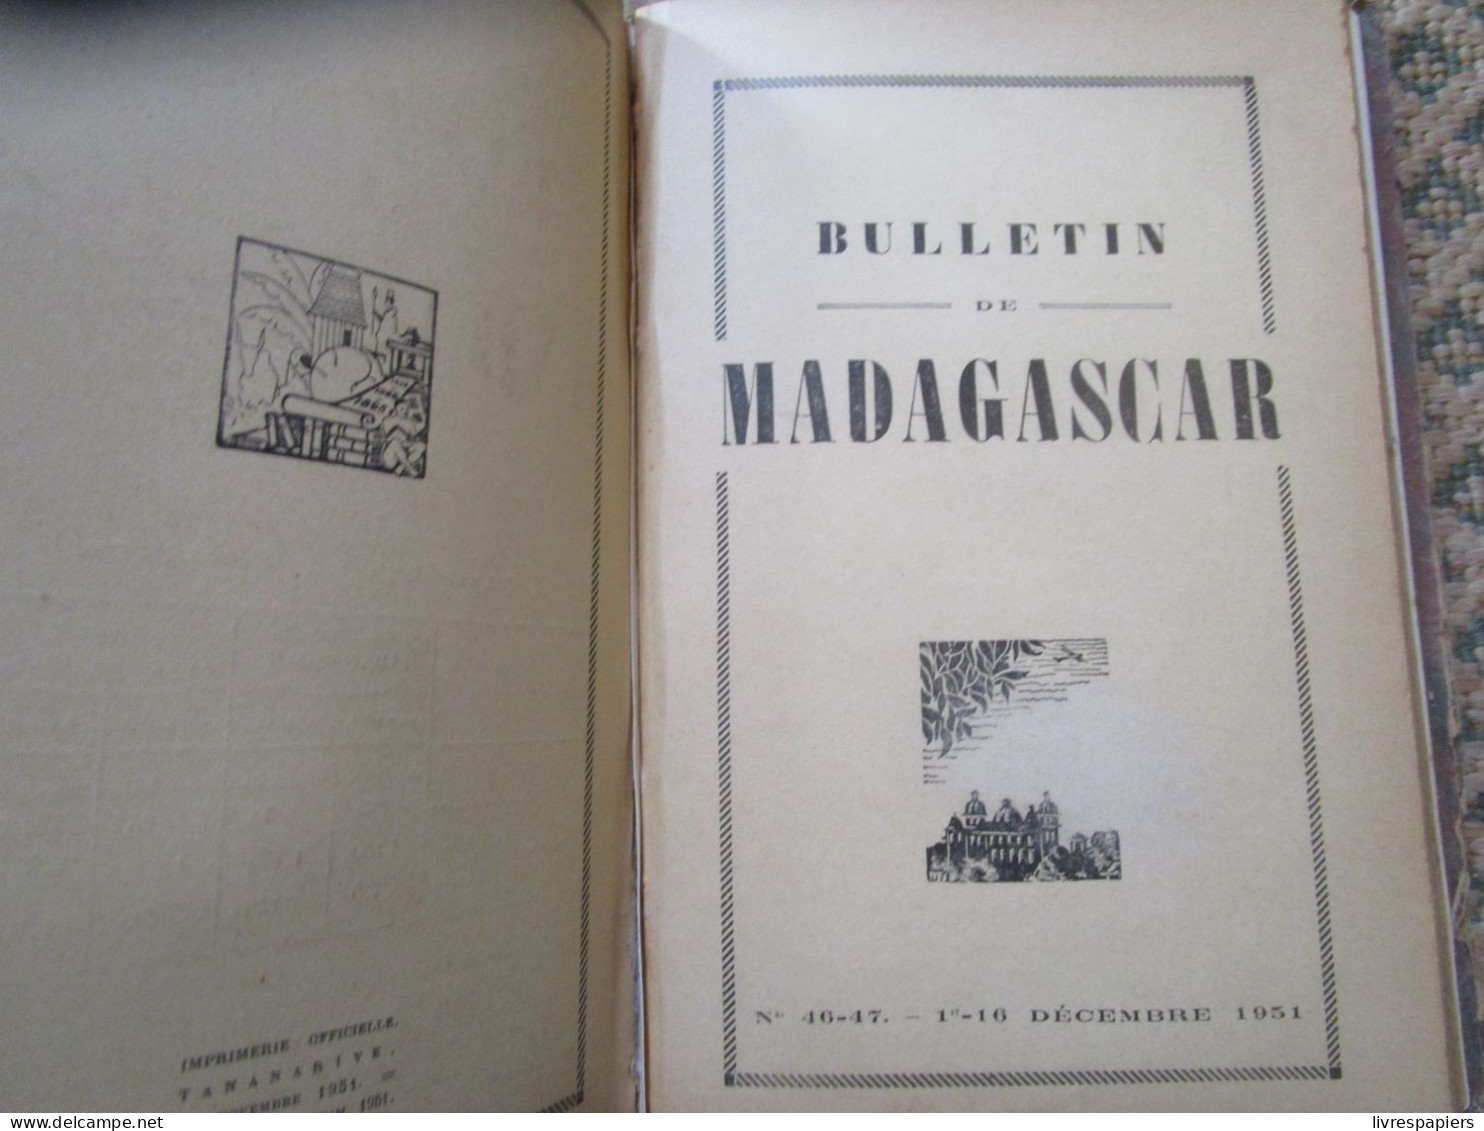 Madagascar BULLETIN DE MADAGASCAR 1951 Complet Janv à Dec , Relier Couvertures Conservées - Histoire